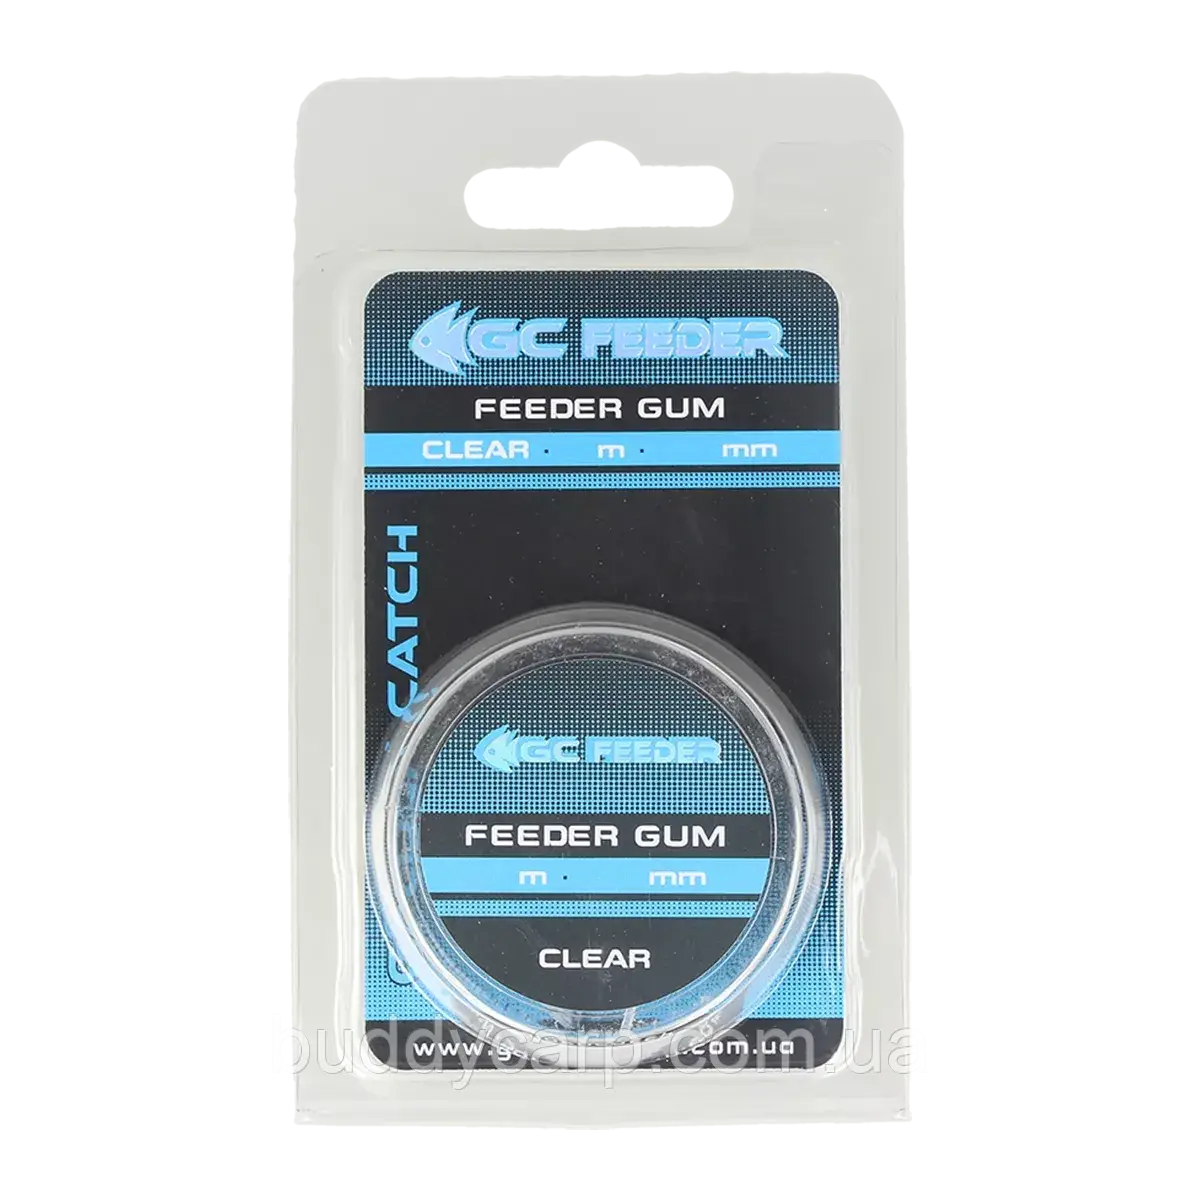 Амортизатор GC Feeder Gum 8м 0.8мм Clear